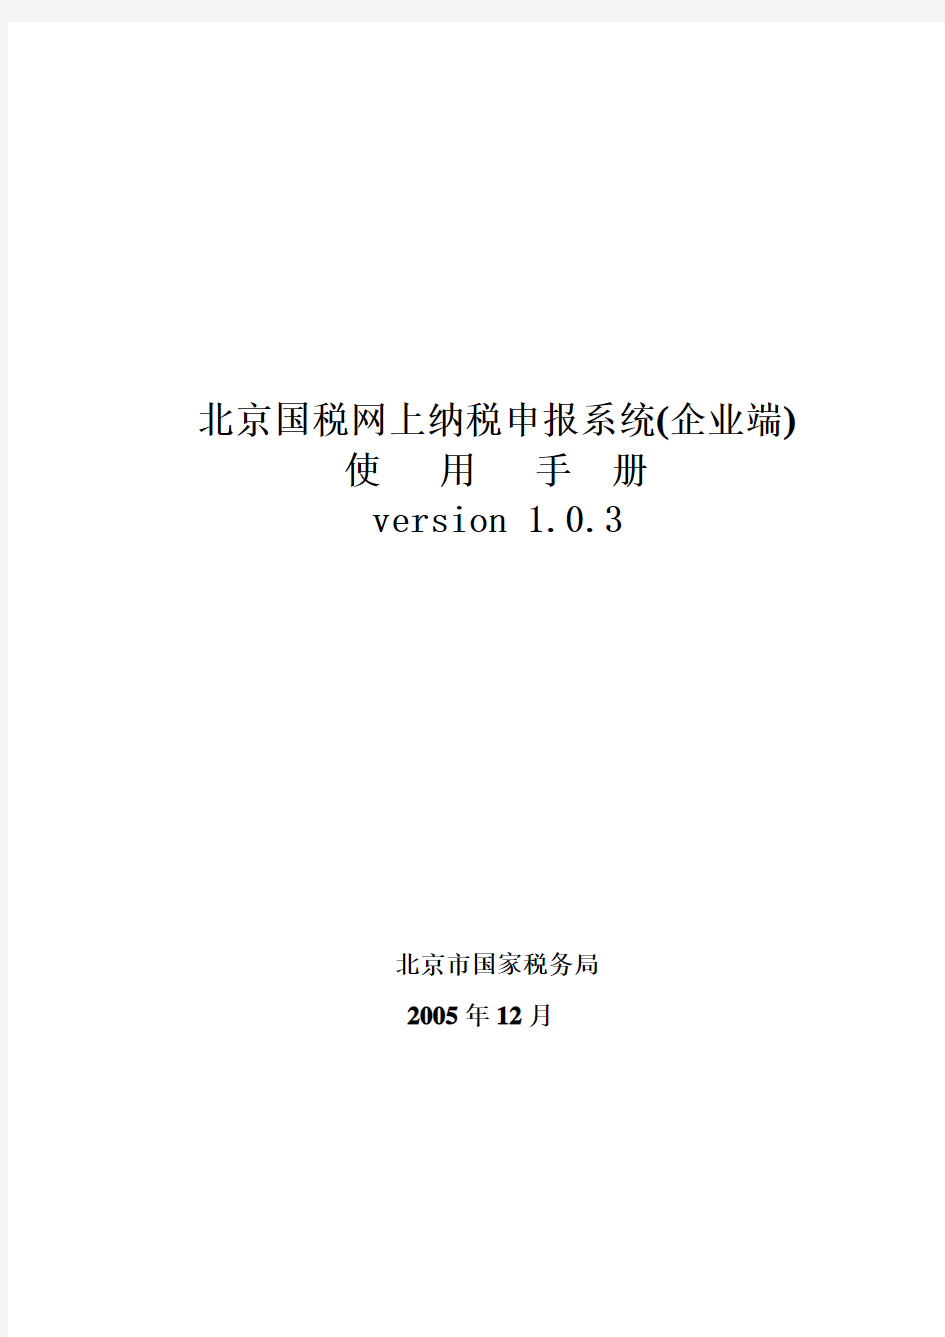 北京国税网上纳税申报系统操作手册